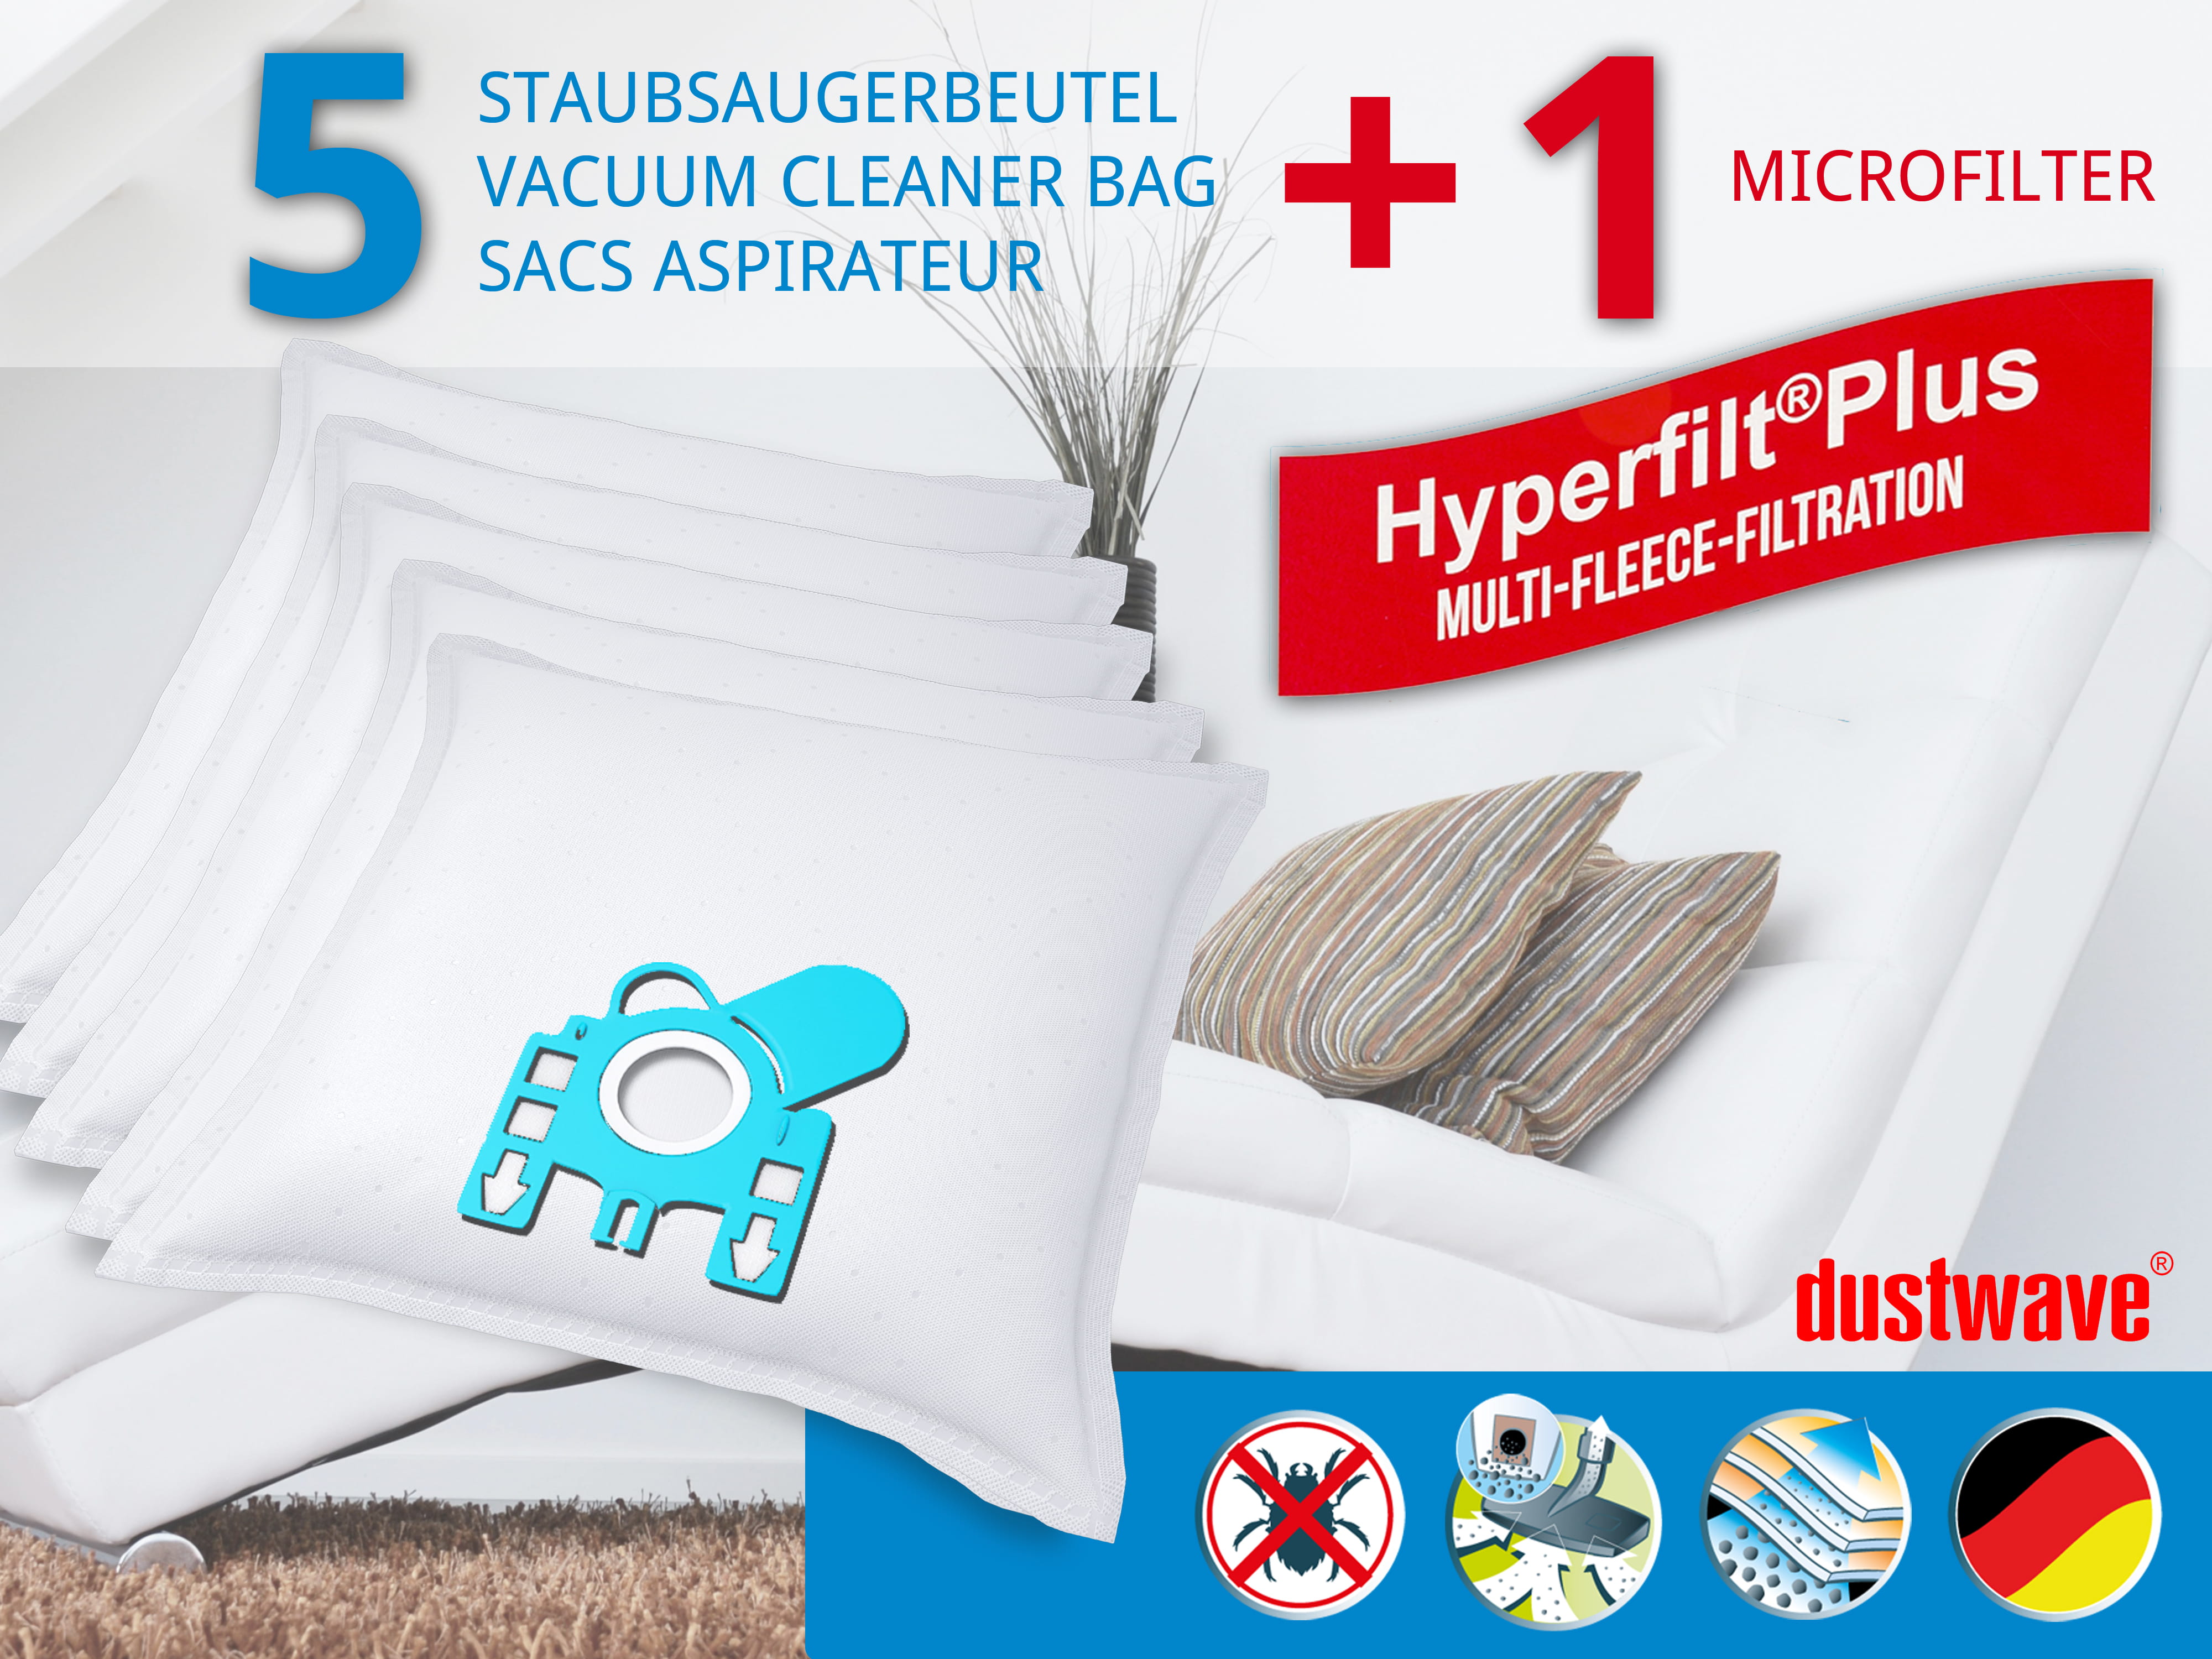 Dustwave® 5 Staubsaugerbeutel für Miele S420i / S 420 i - hocheffizient, mehrlagiges Mikrovlies mit Hygieneverschluss - Made in Germany